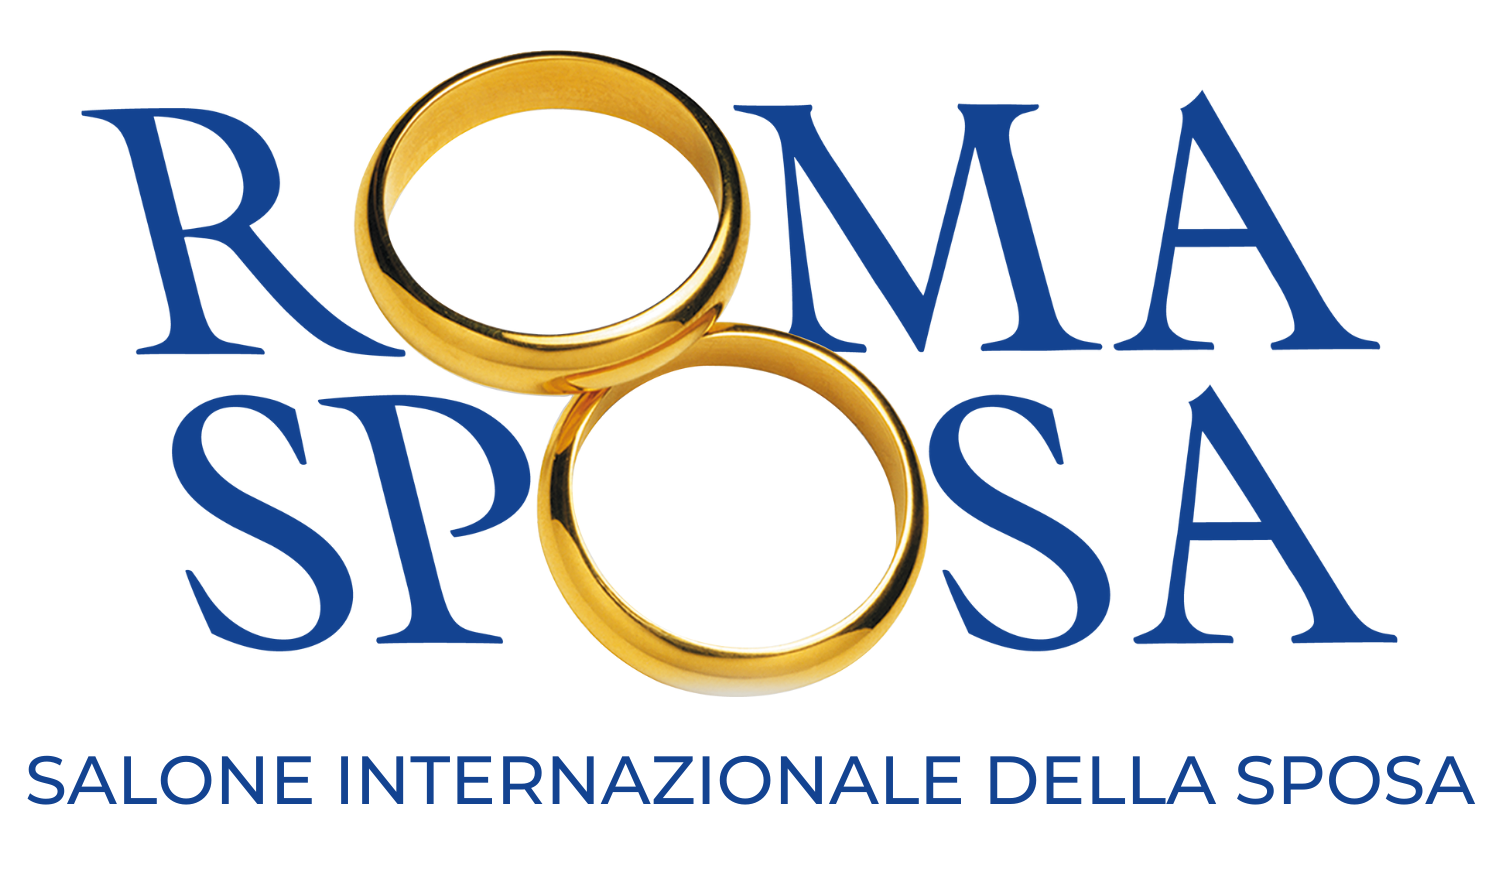 意大利羅馬國際婚紗展覽會logo